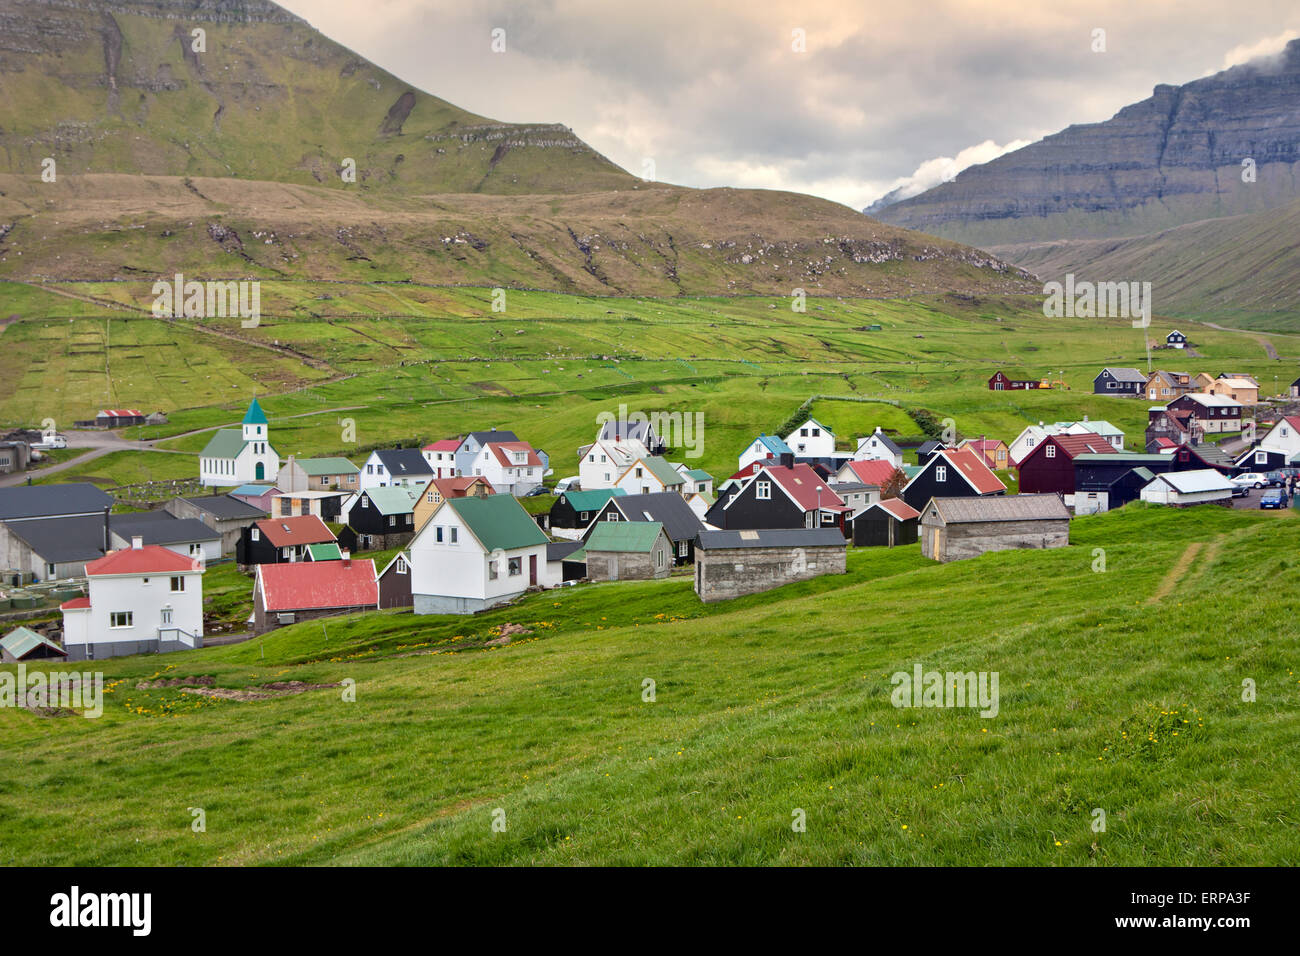 Gjogv, Faroe Islands : remote village in a green valley Stock Photo